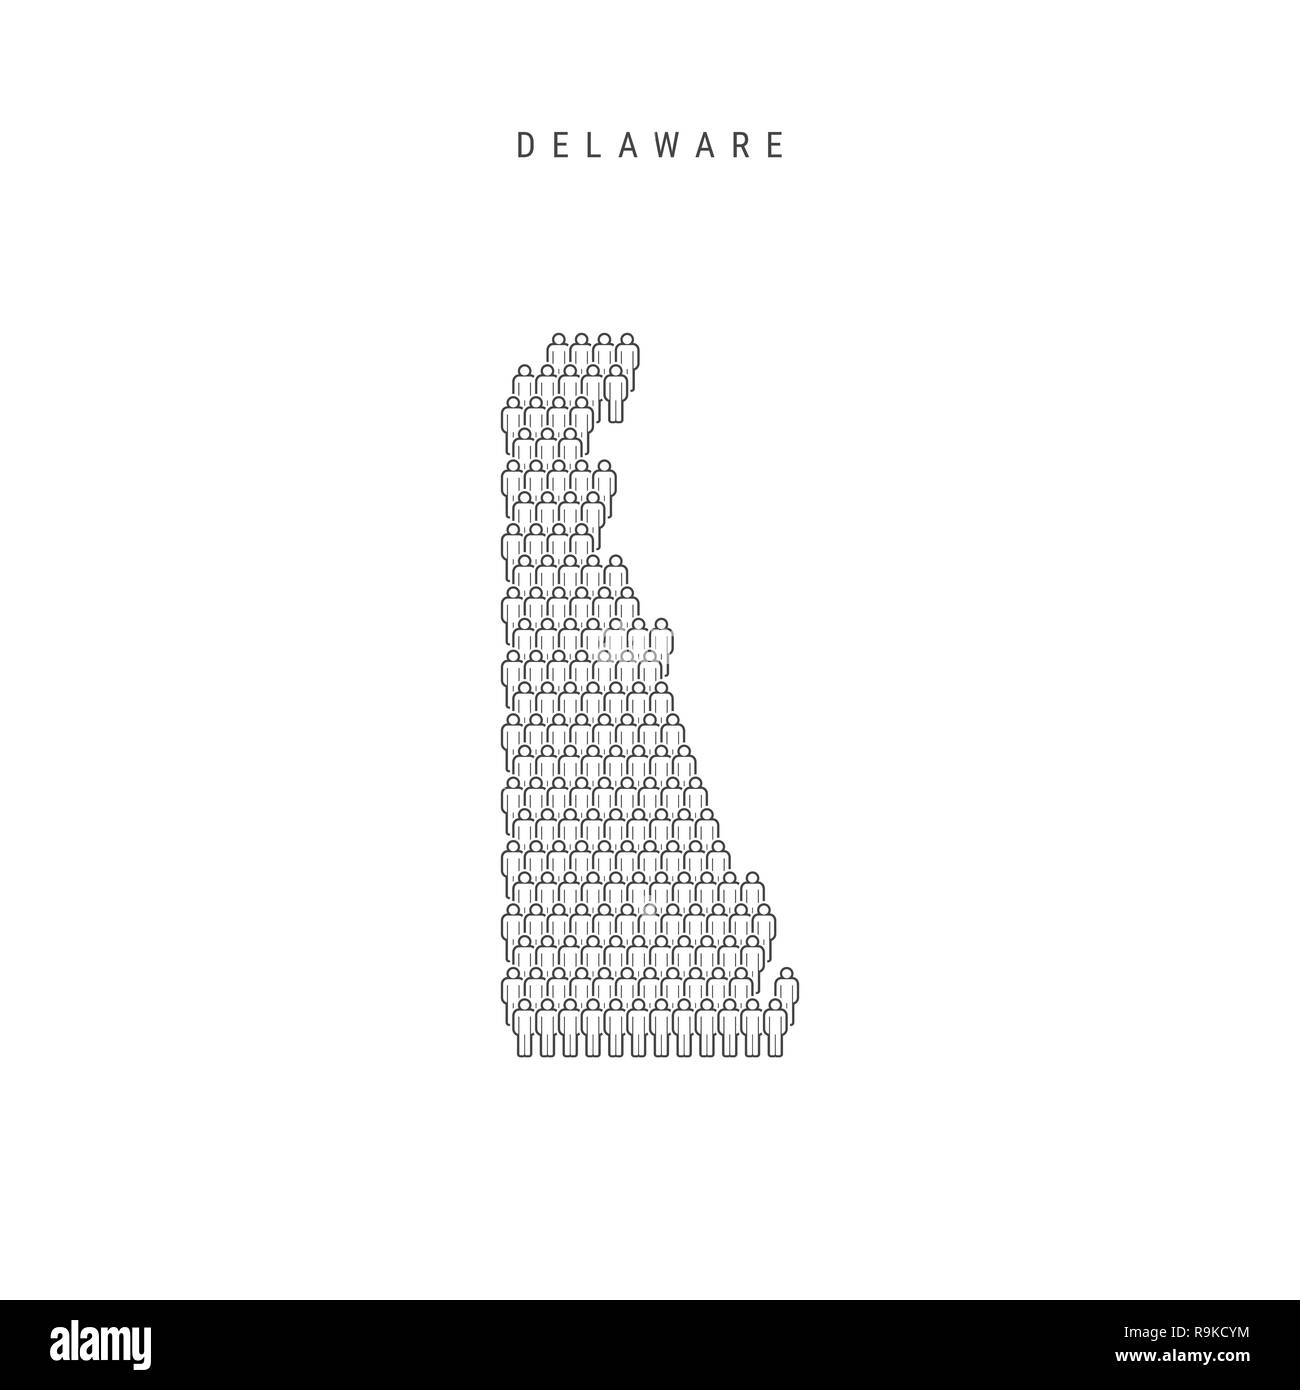 Leute Karte von Delaware, USA. Stilisierte Silhouette, Leute in der Form einer Karte von Delaware. Delaware Bevölkerung. Abbildung isoliert auf W Stockfoto